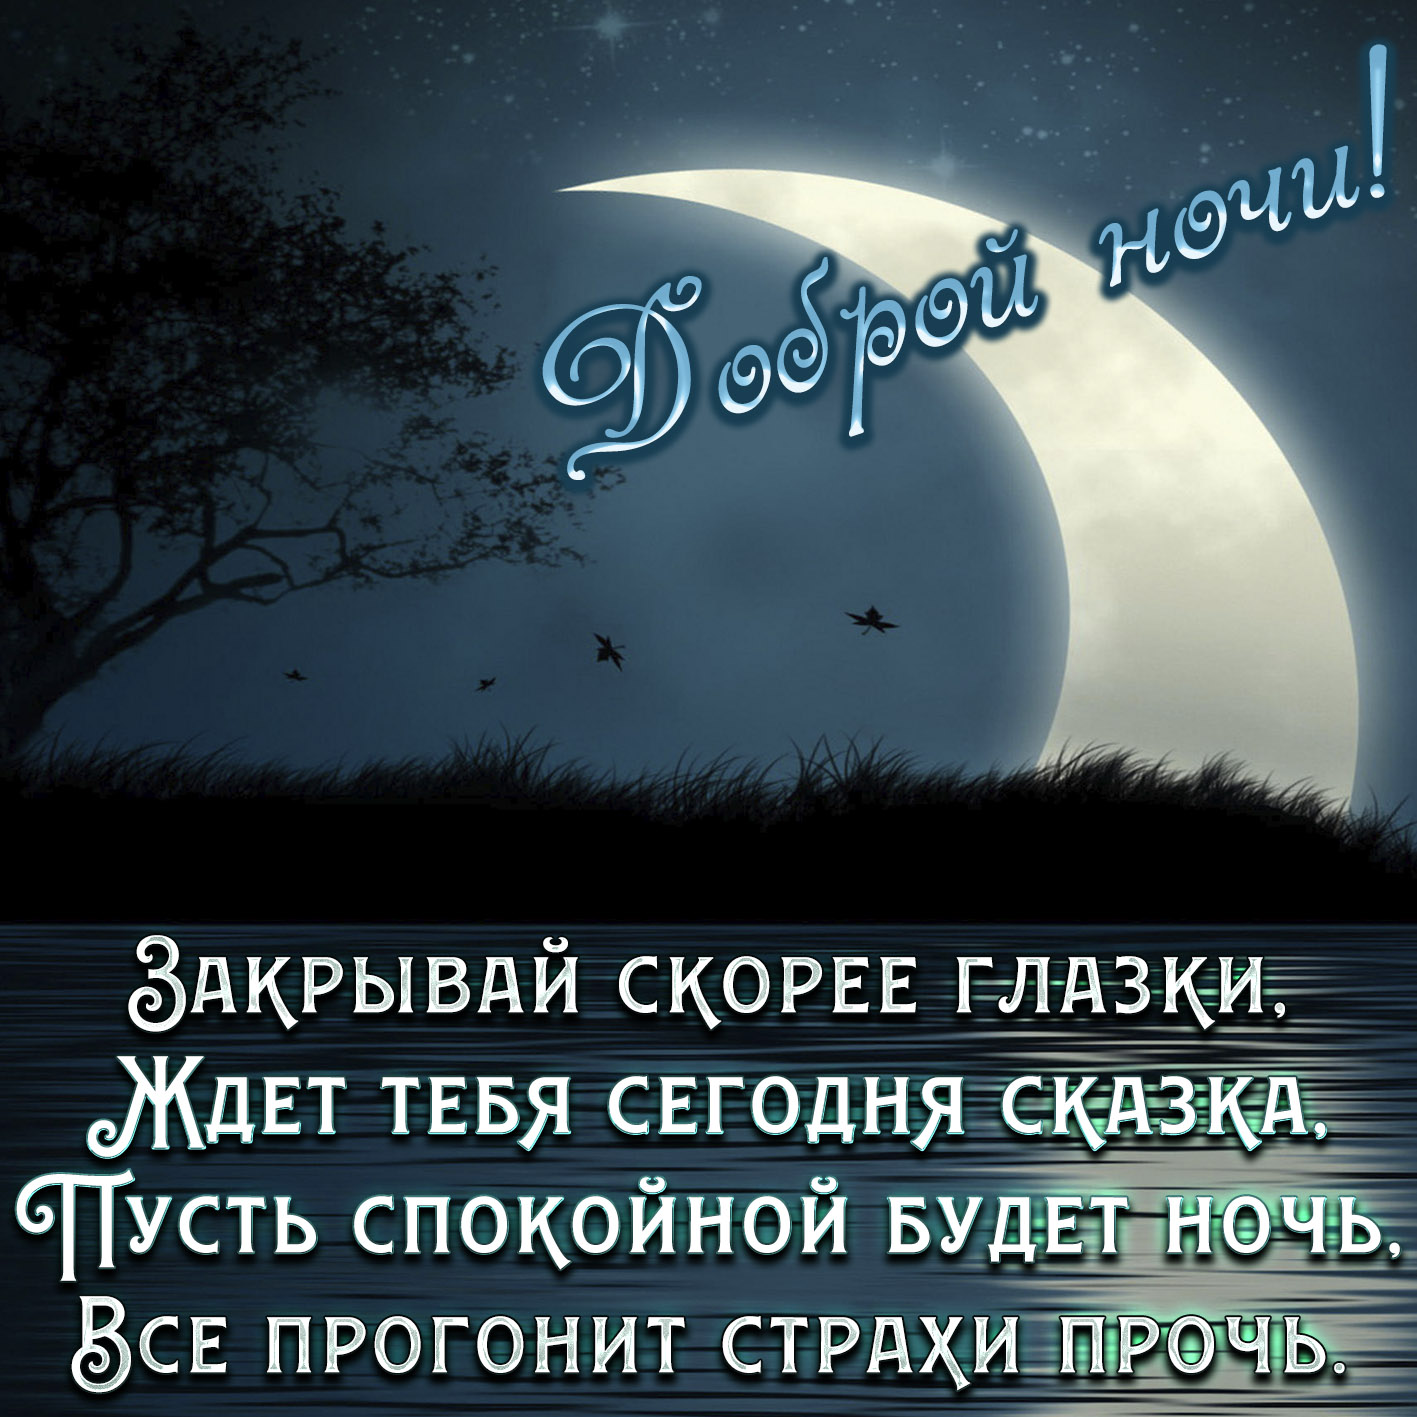 Пожелание хорошего ночи любимой. Пожелания спокойной ночи. Пожелания доброй ночи. Стихи спокойной ночи. Пожелания спокойной ночи любимому.